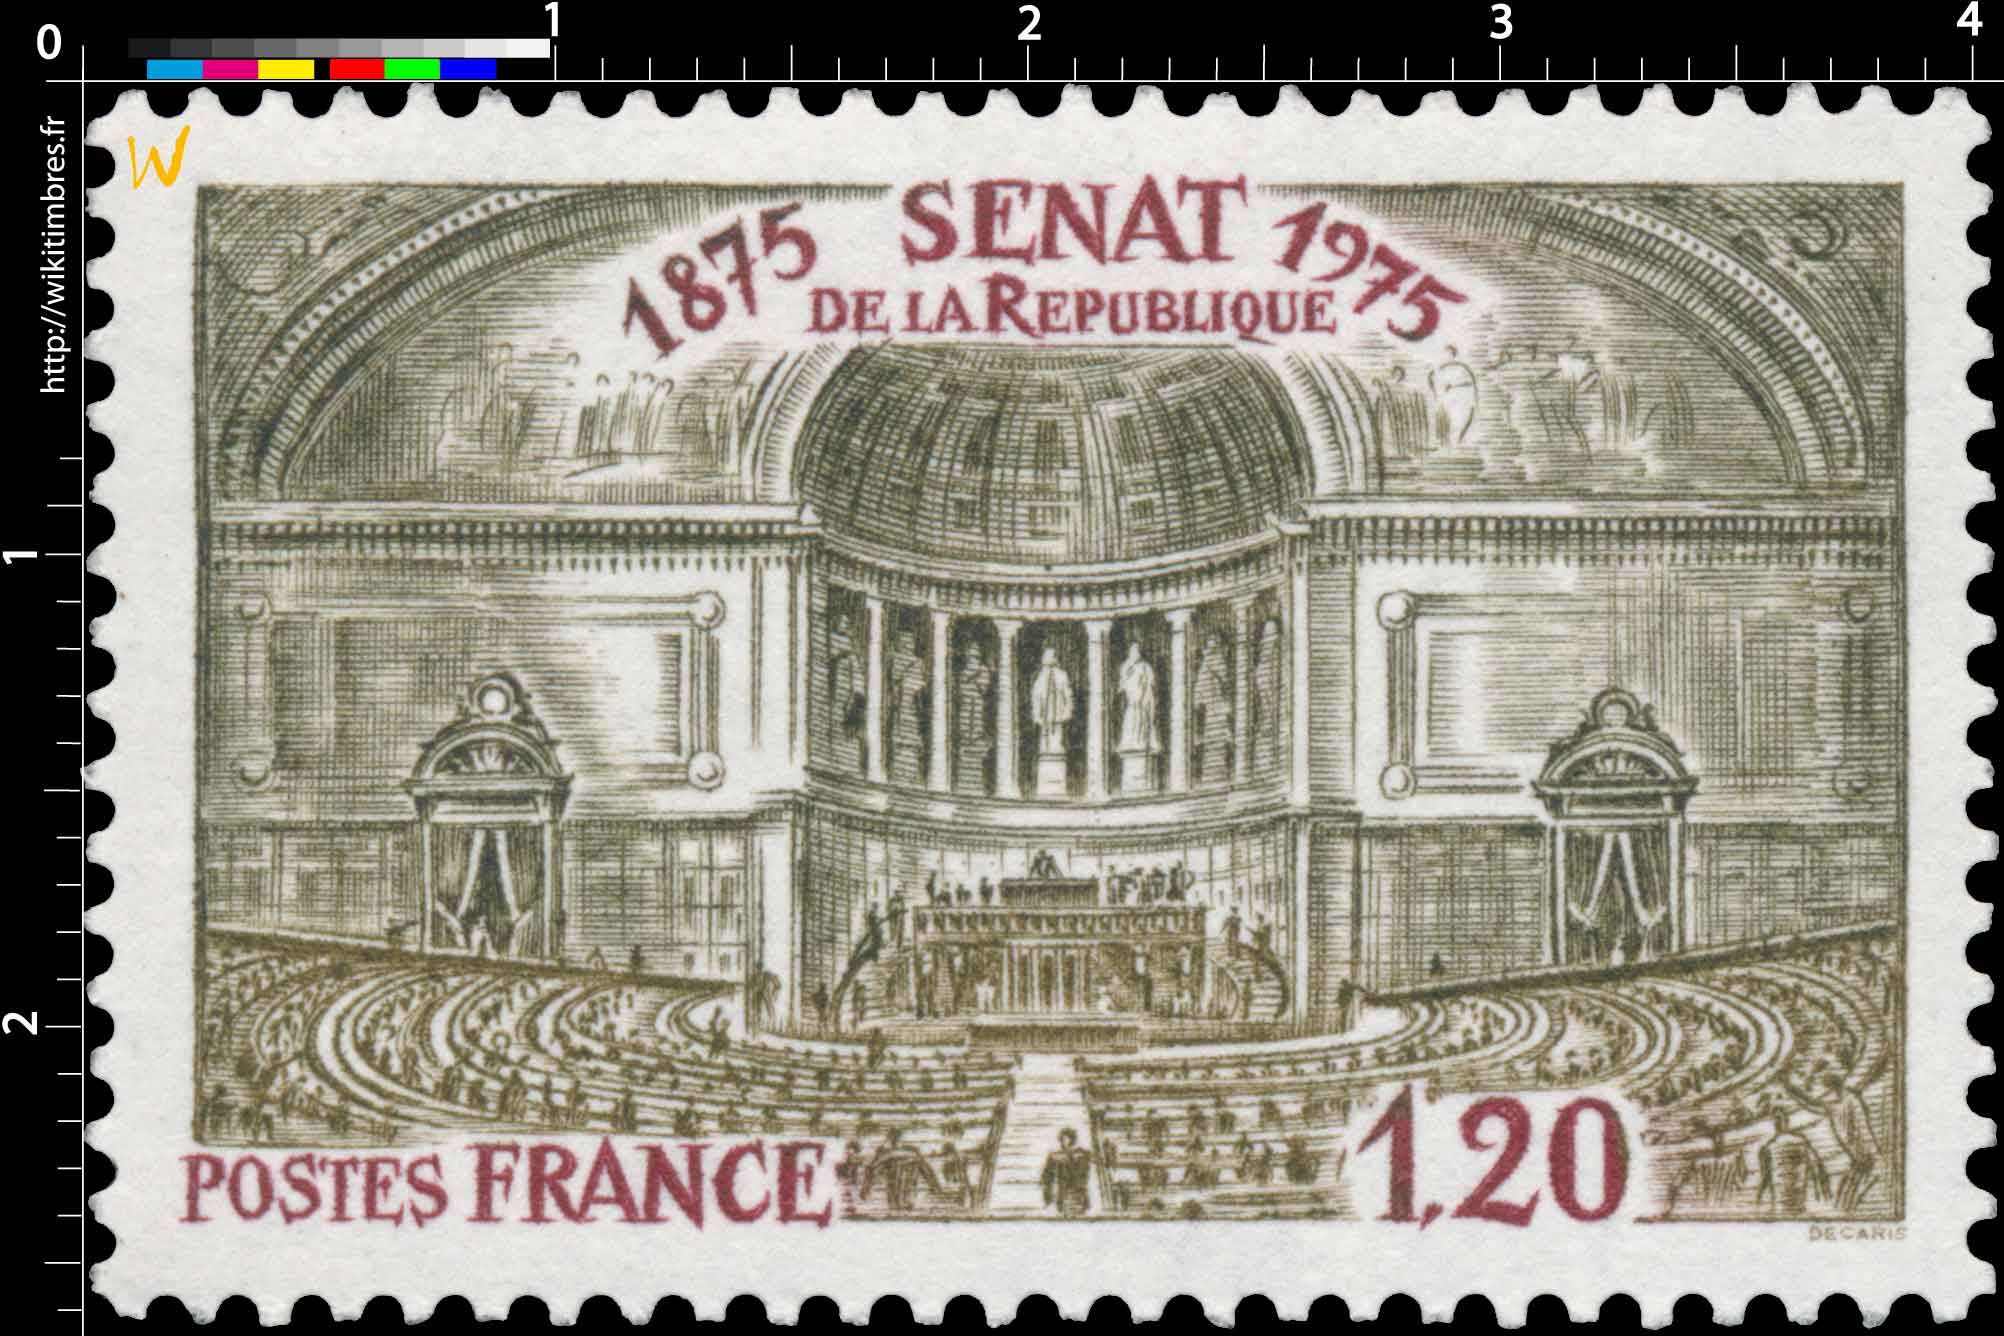 SÉNAT DE LA RÉPUBLIQUE 1875-1975